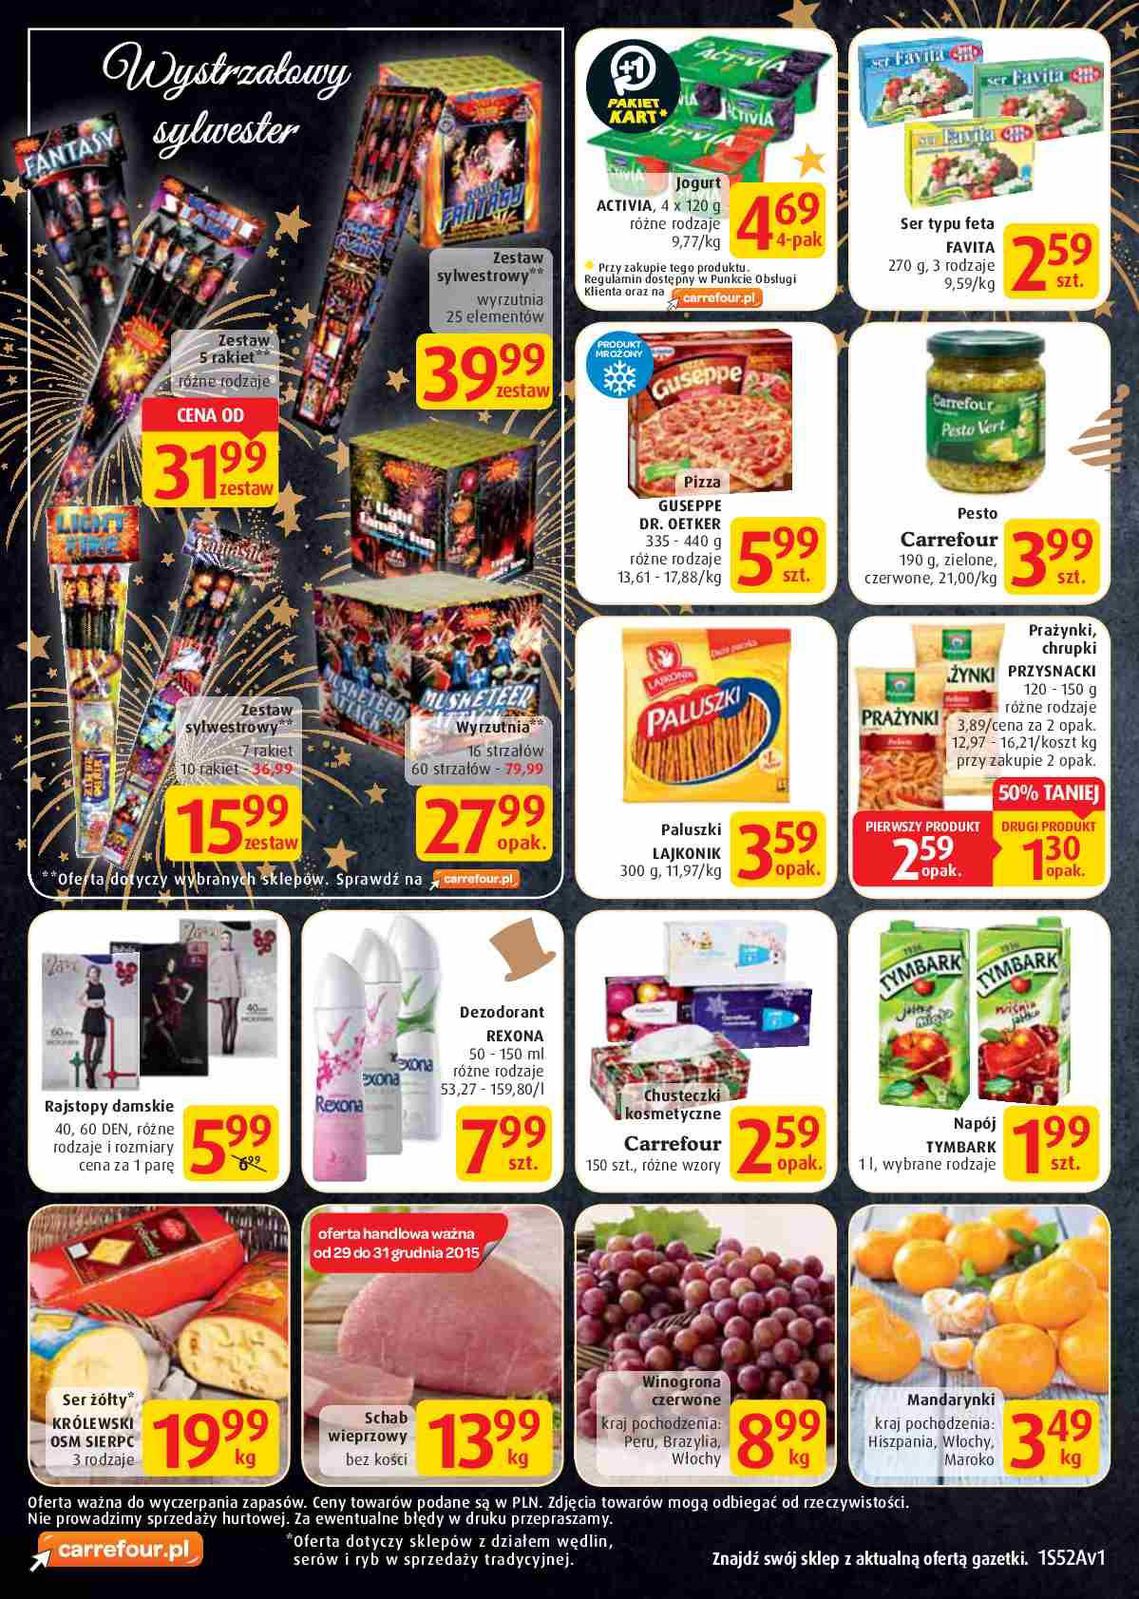 Gazetka promocyjna Carrefour Market do 31/12/2015 str.1